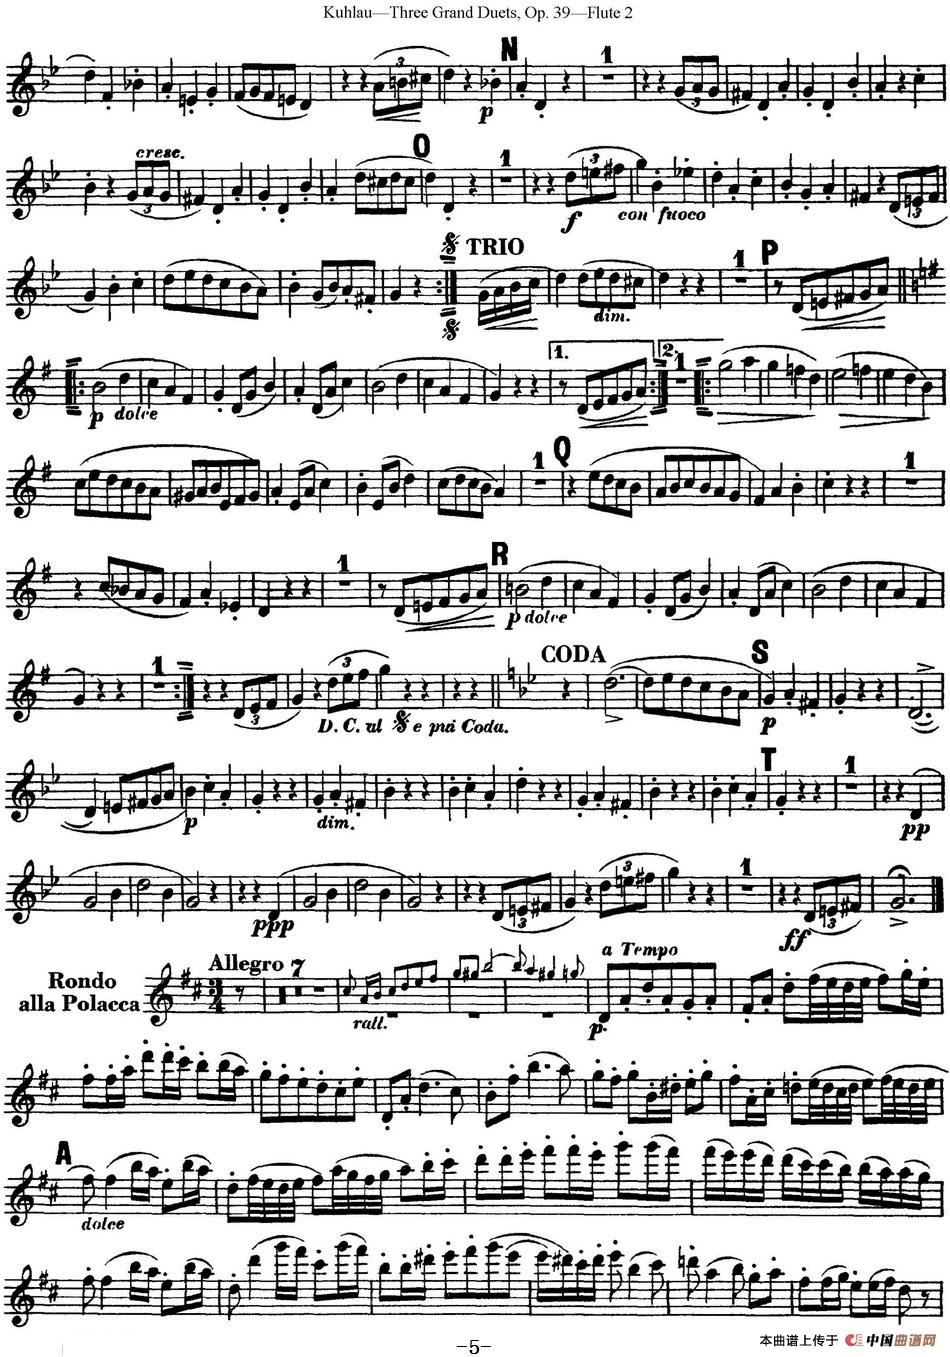 库劳长笛二重奏大练习曲Op.39——Flute 2（No.3）